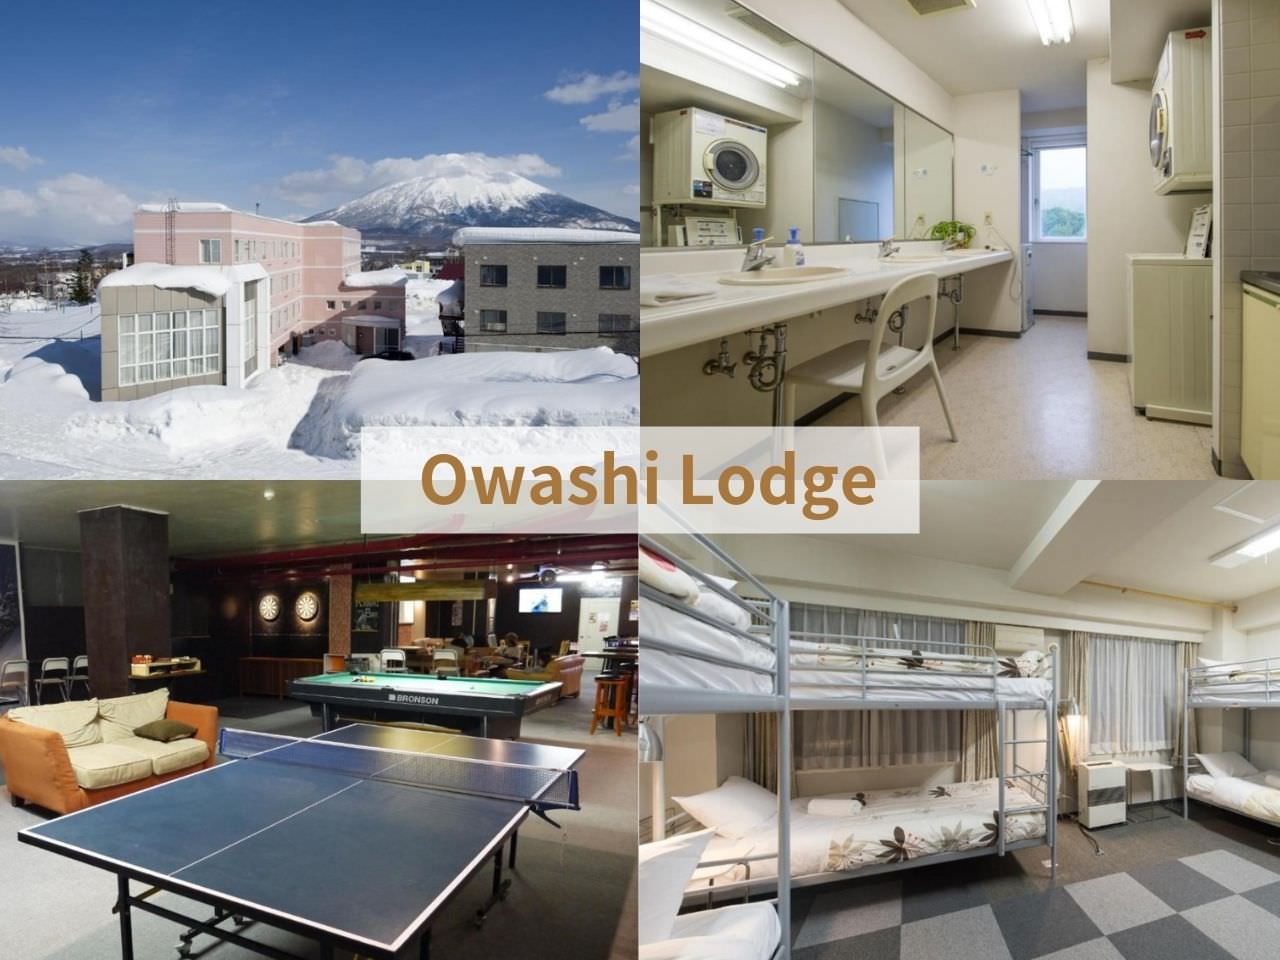 Owashi Lodge